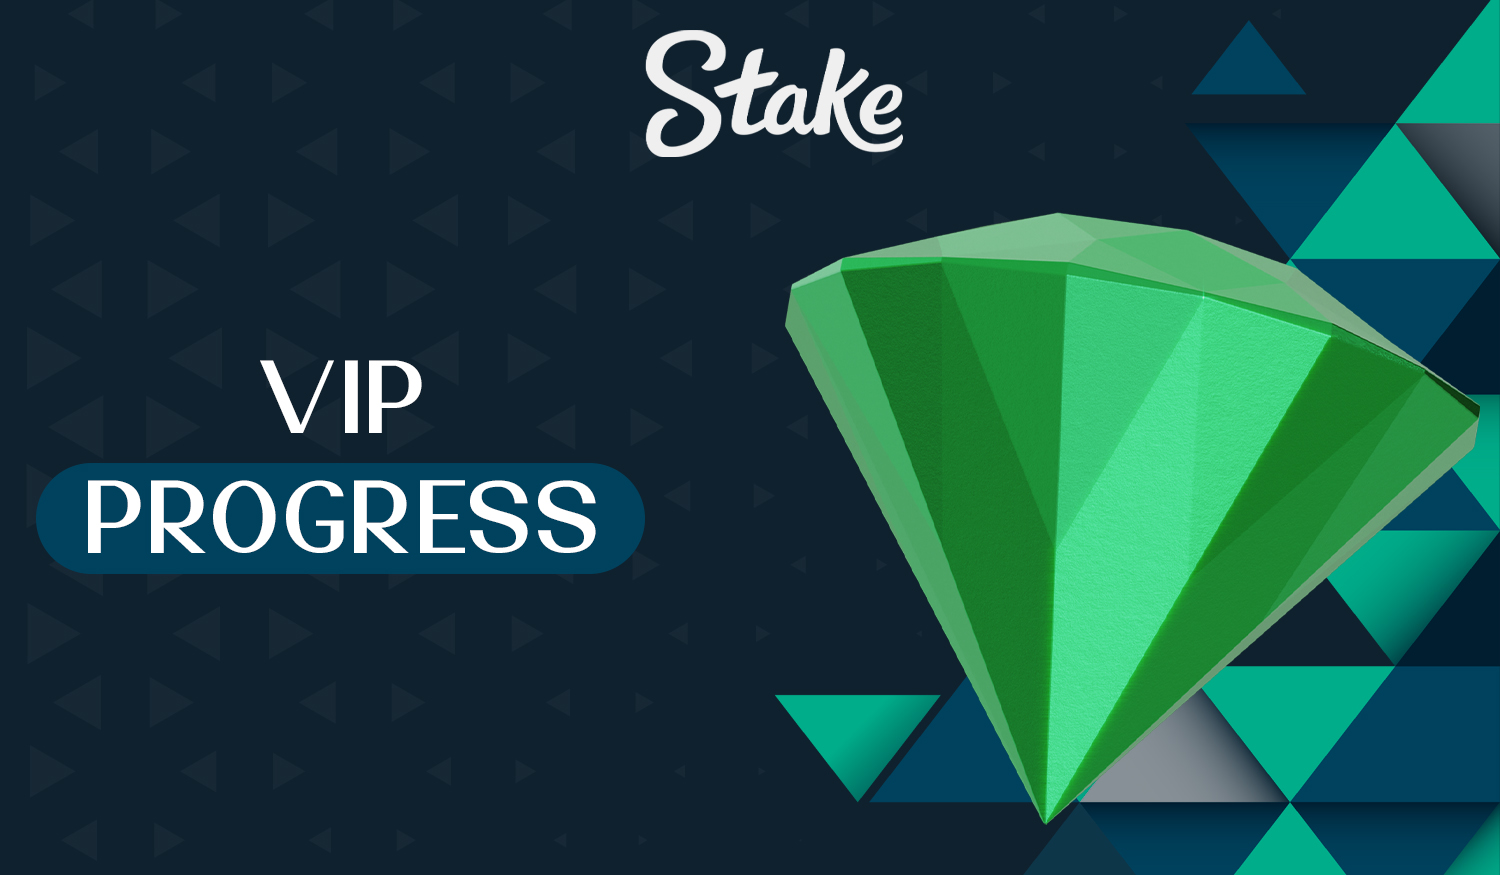 Details on the VIP Progress Bonus Program on the Stake website 